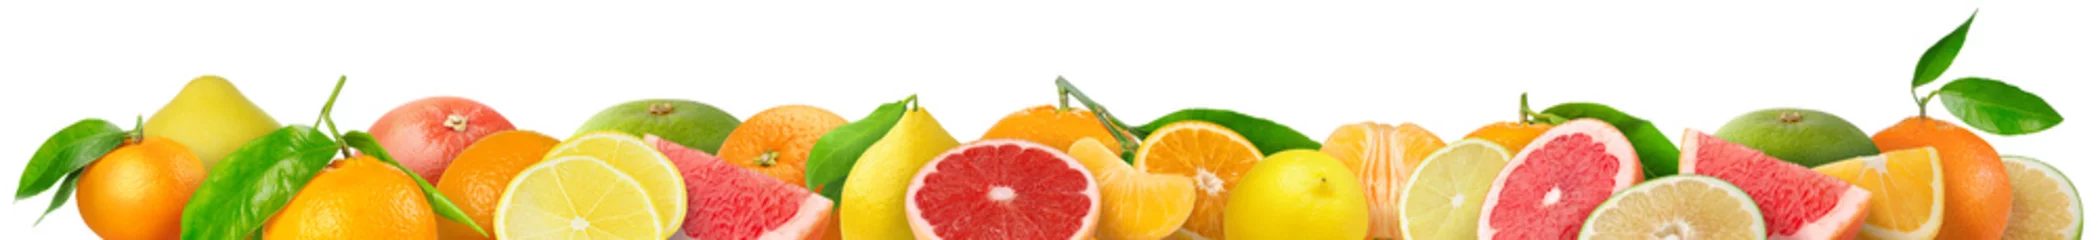 Foto op Canvas Gemengde citrusvruchten grens. Stapel sinaasappel, citroen, mandarijn, grapefruit en andere citrusvruchten in horizontale samenstelling geïsoleerd op witte achtergrond © ChaoticDesignStudio